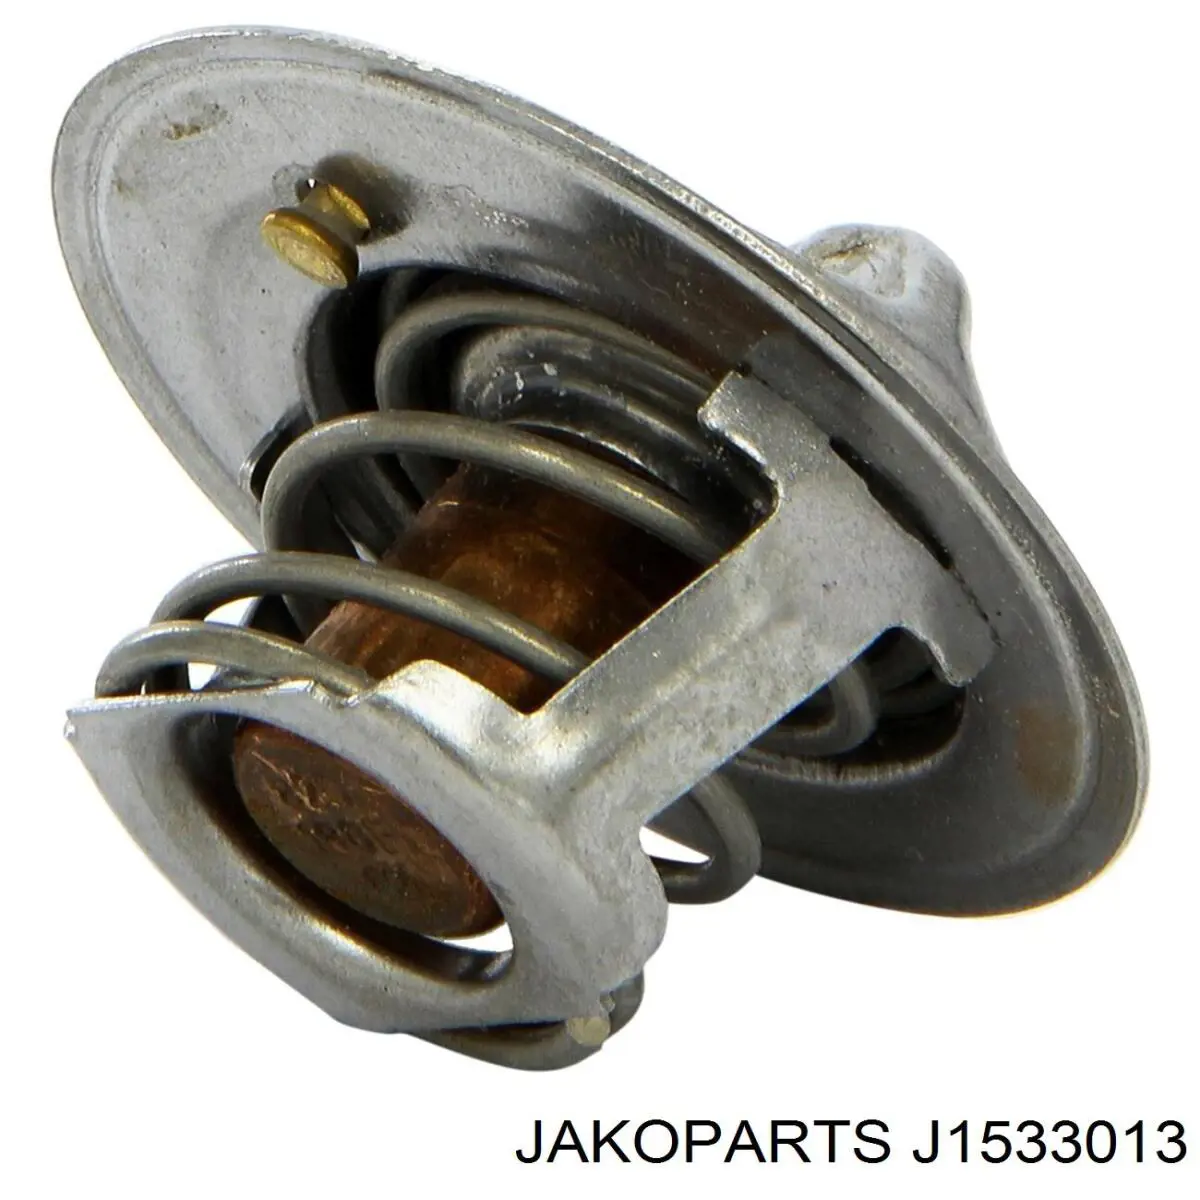 J1533013 Jakoparts termostato